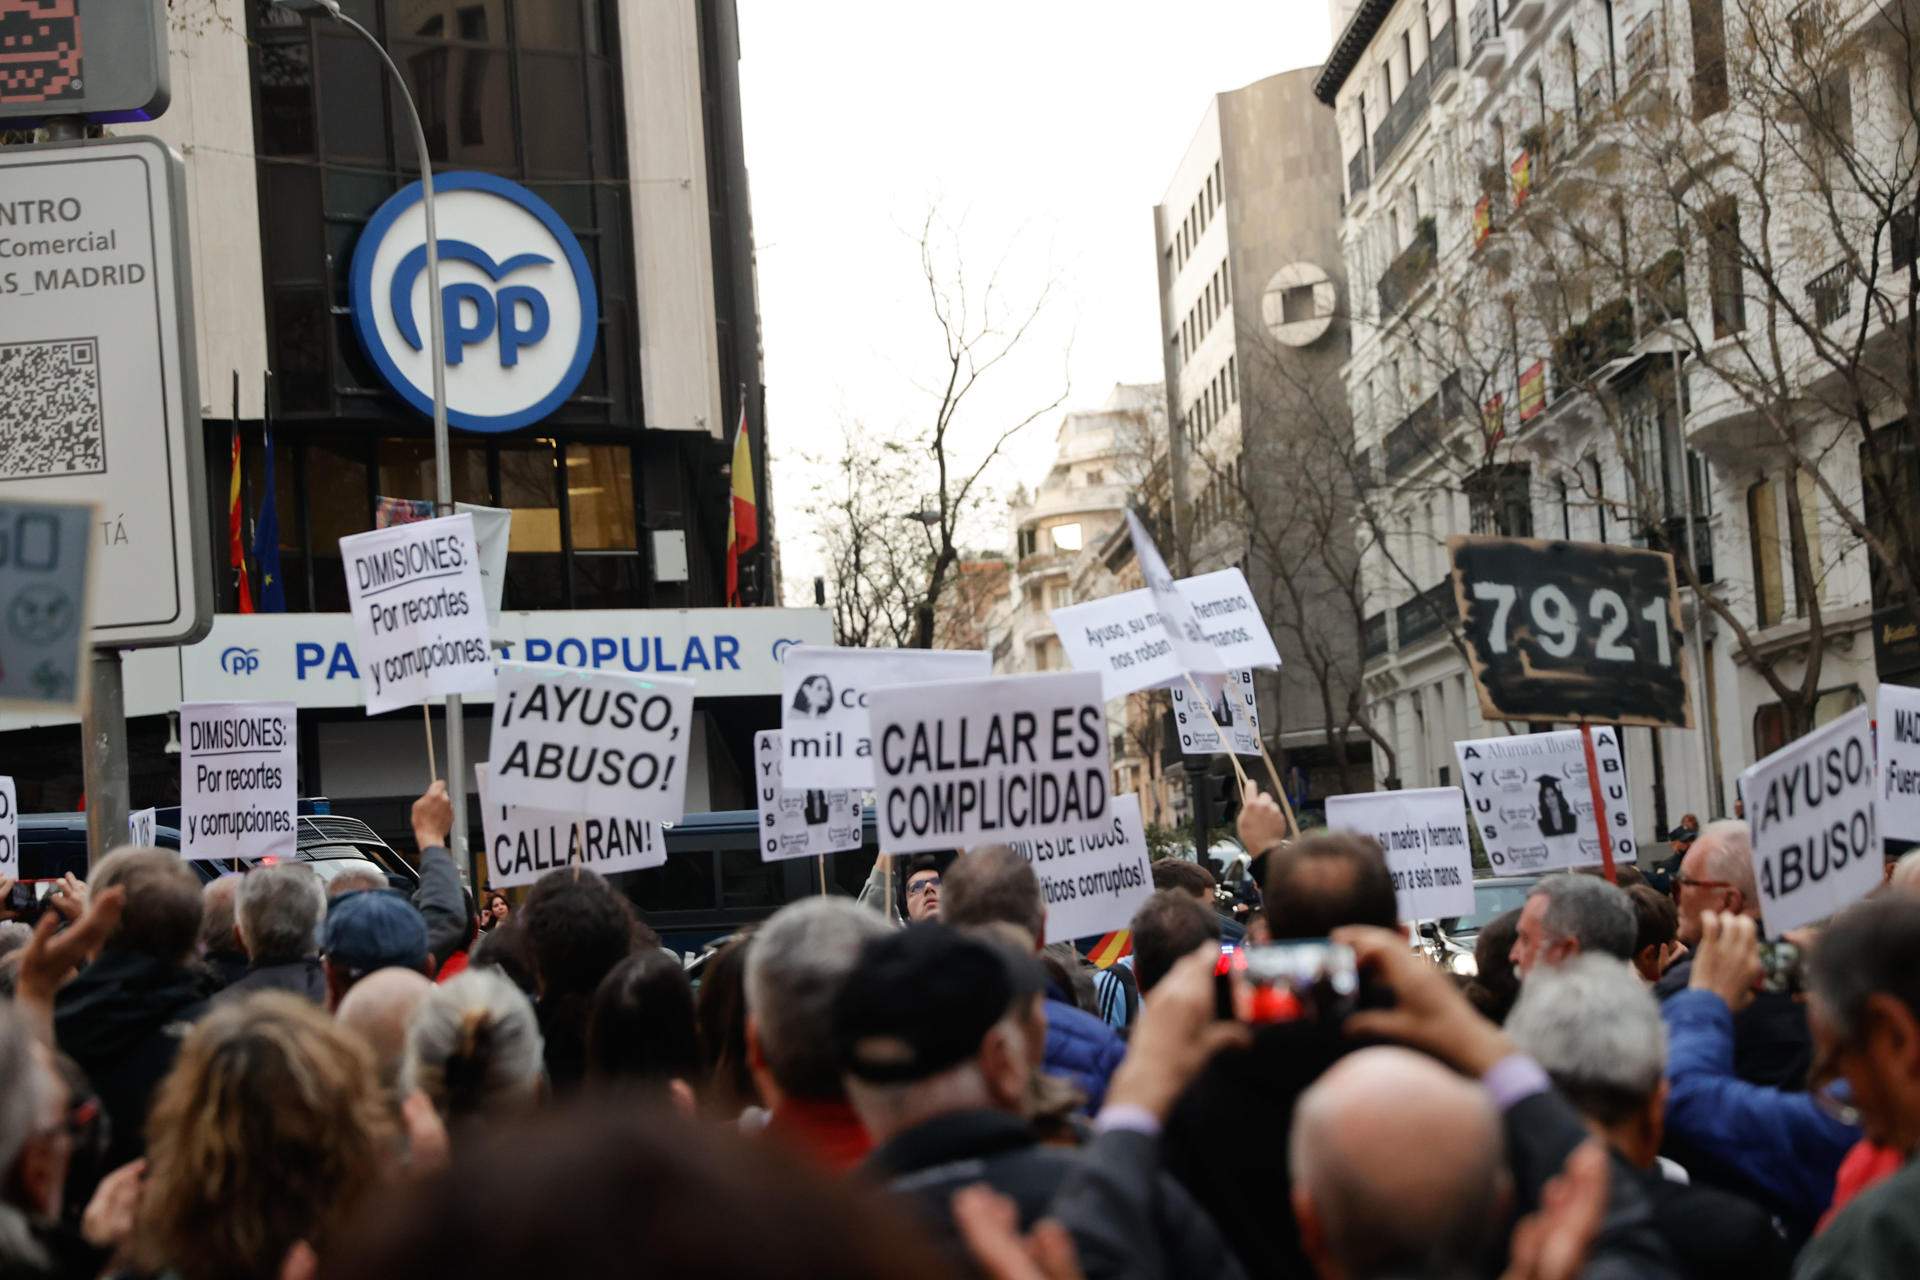 Protesta contra Ayuso en las puertas de la sede del PP: “Asesina, corrupta y ladrona”